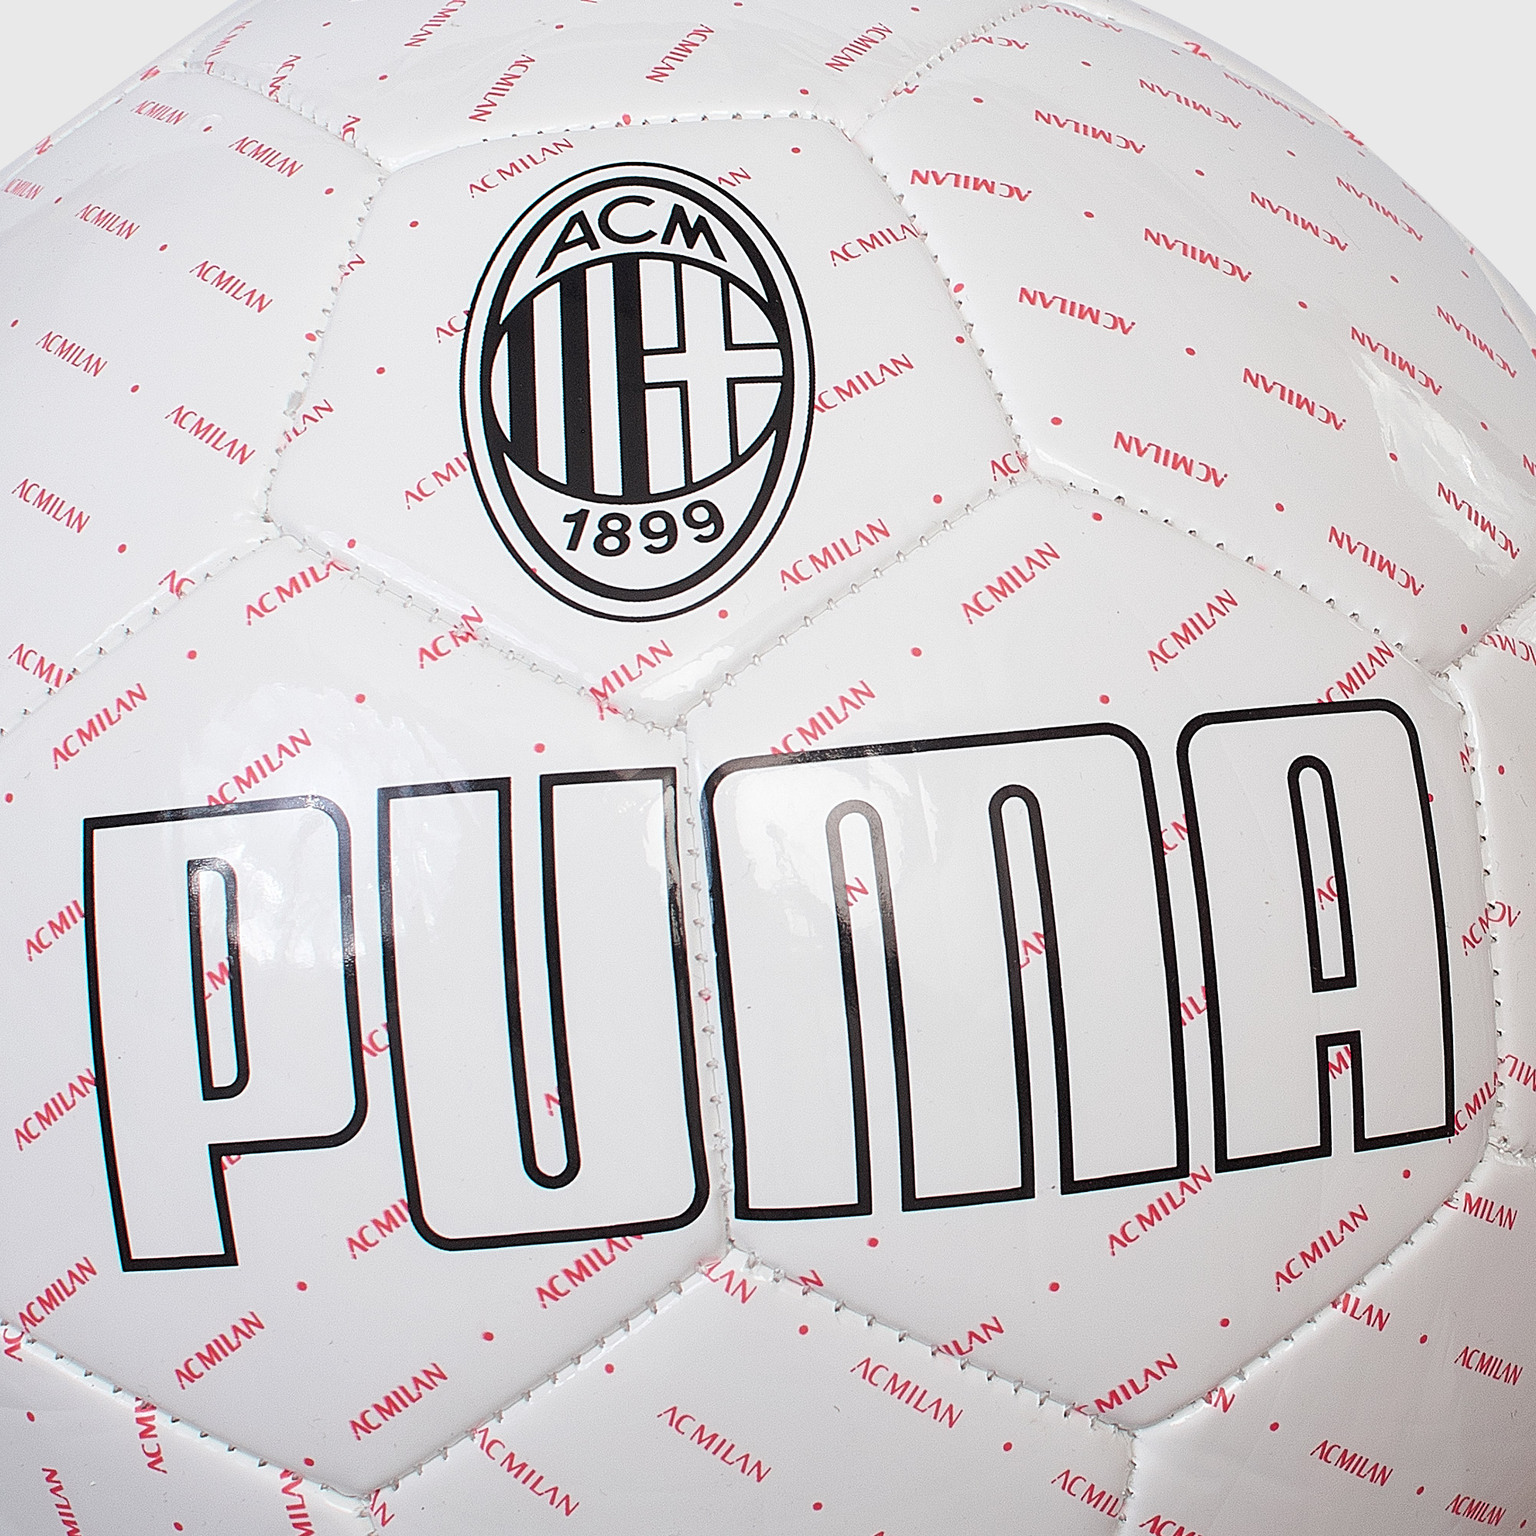 Футбольный мяч Puma Milan 08363701